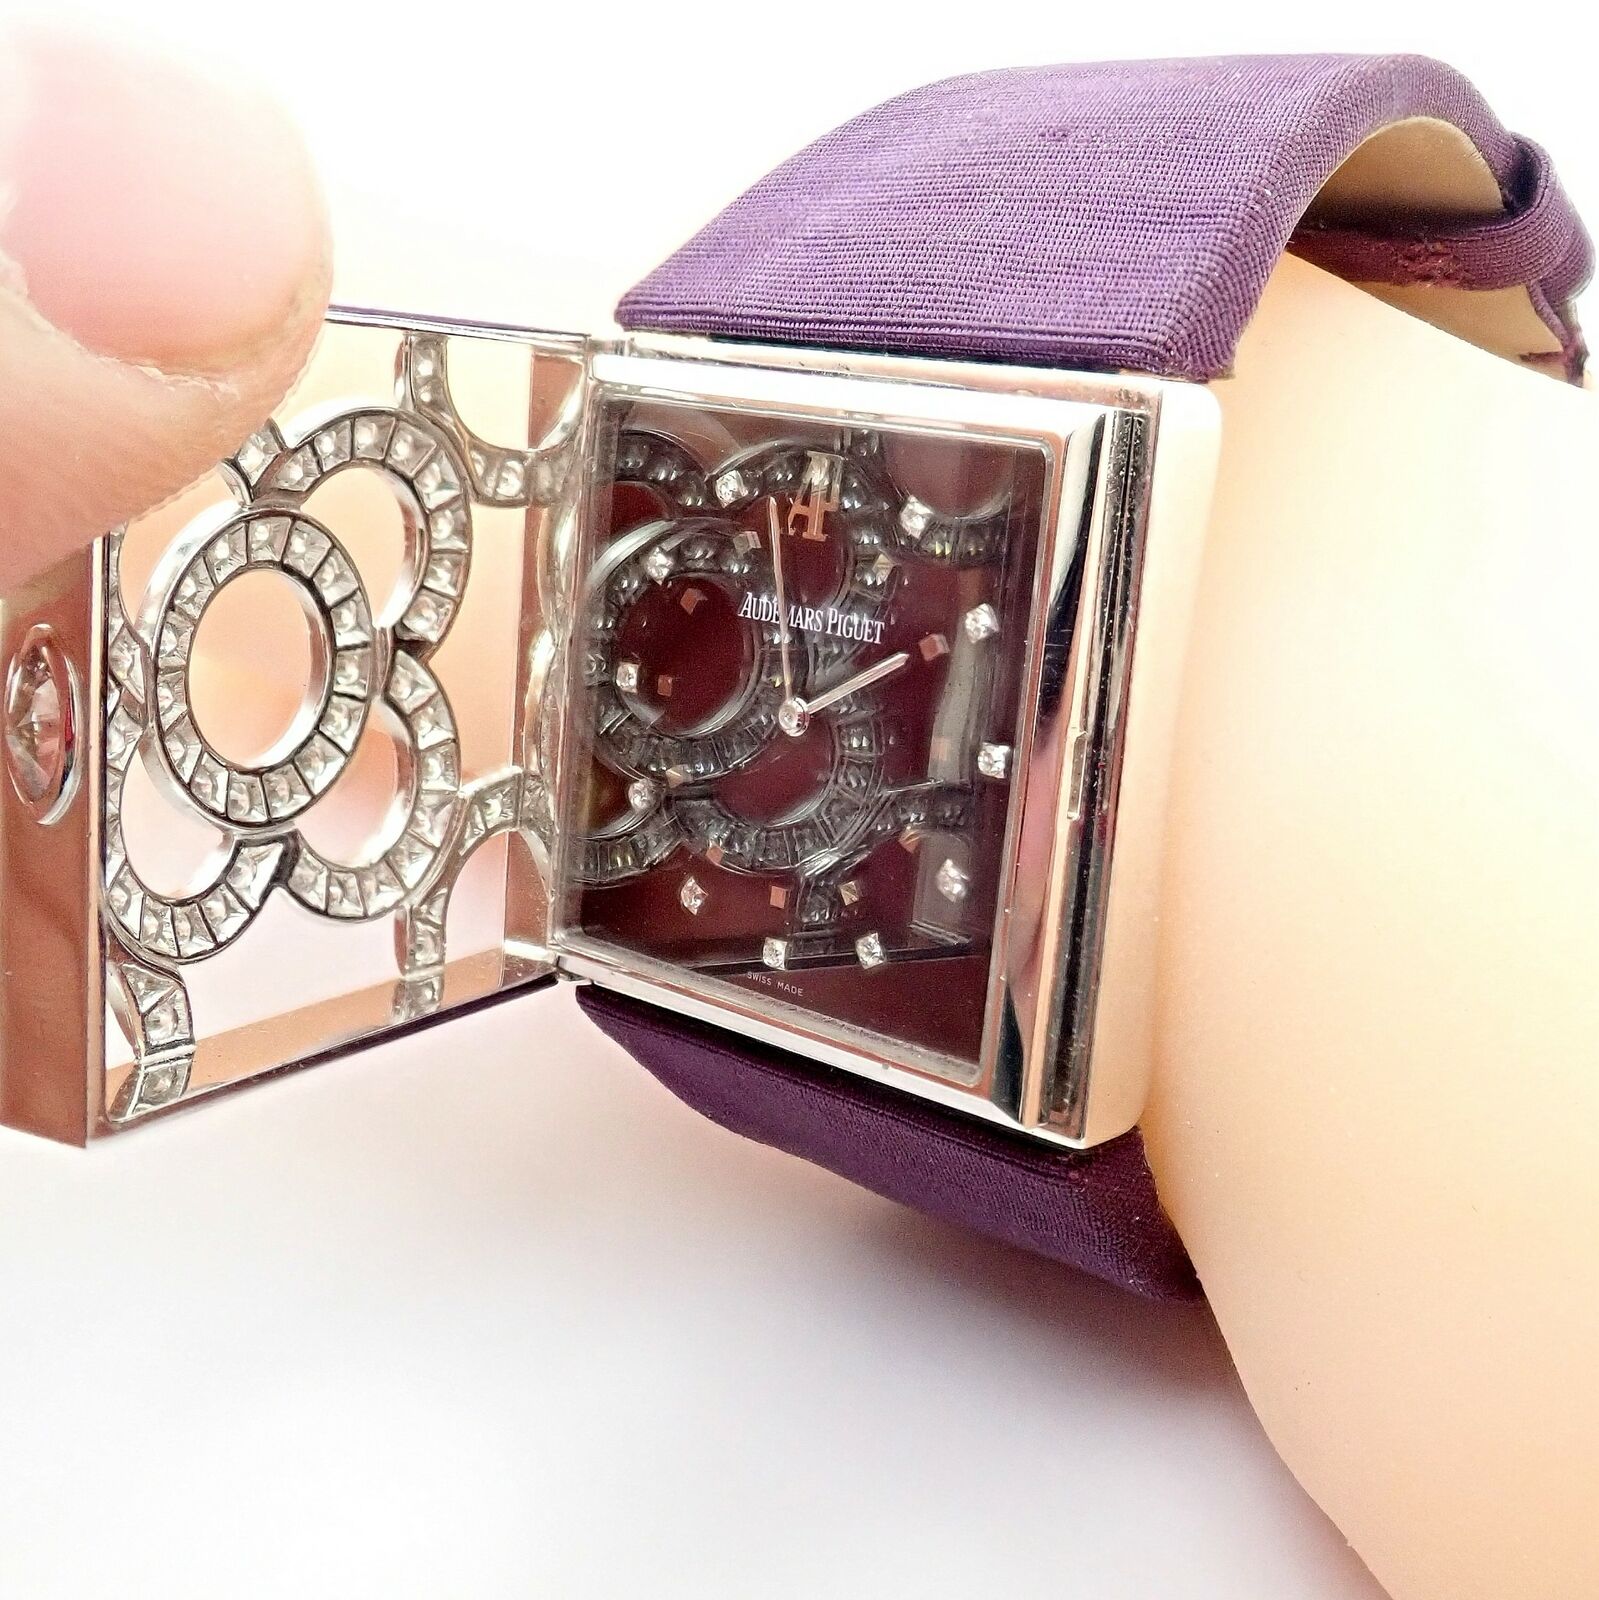 Audemars Piguet Jewelry & Watches:Watches, Parts & Accessories:Watches:Wristwatches Rare! Authentic Audemars Piguet Danae 18k White Gold Diamond Satin Ladies Watch